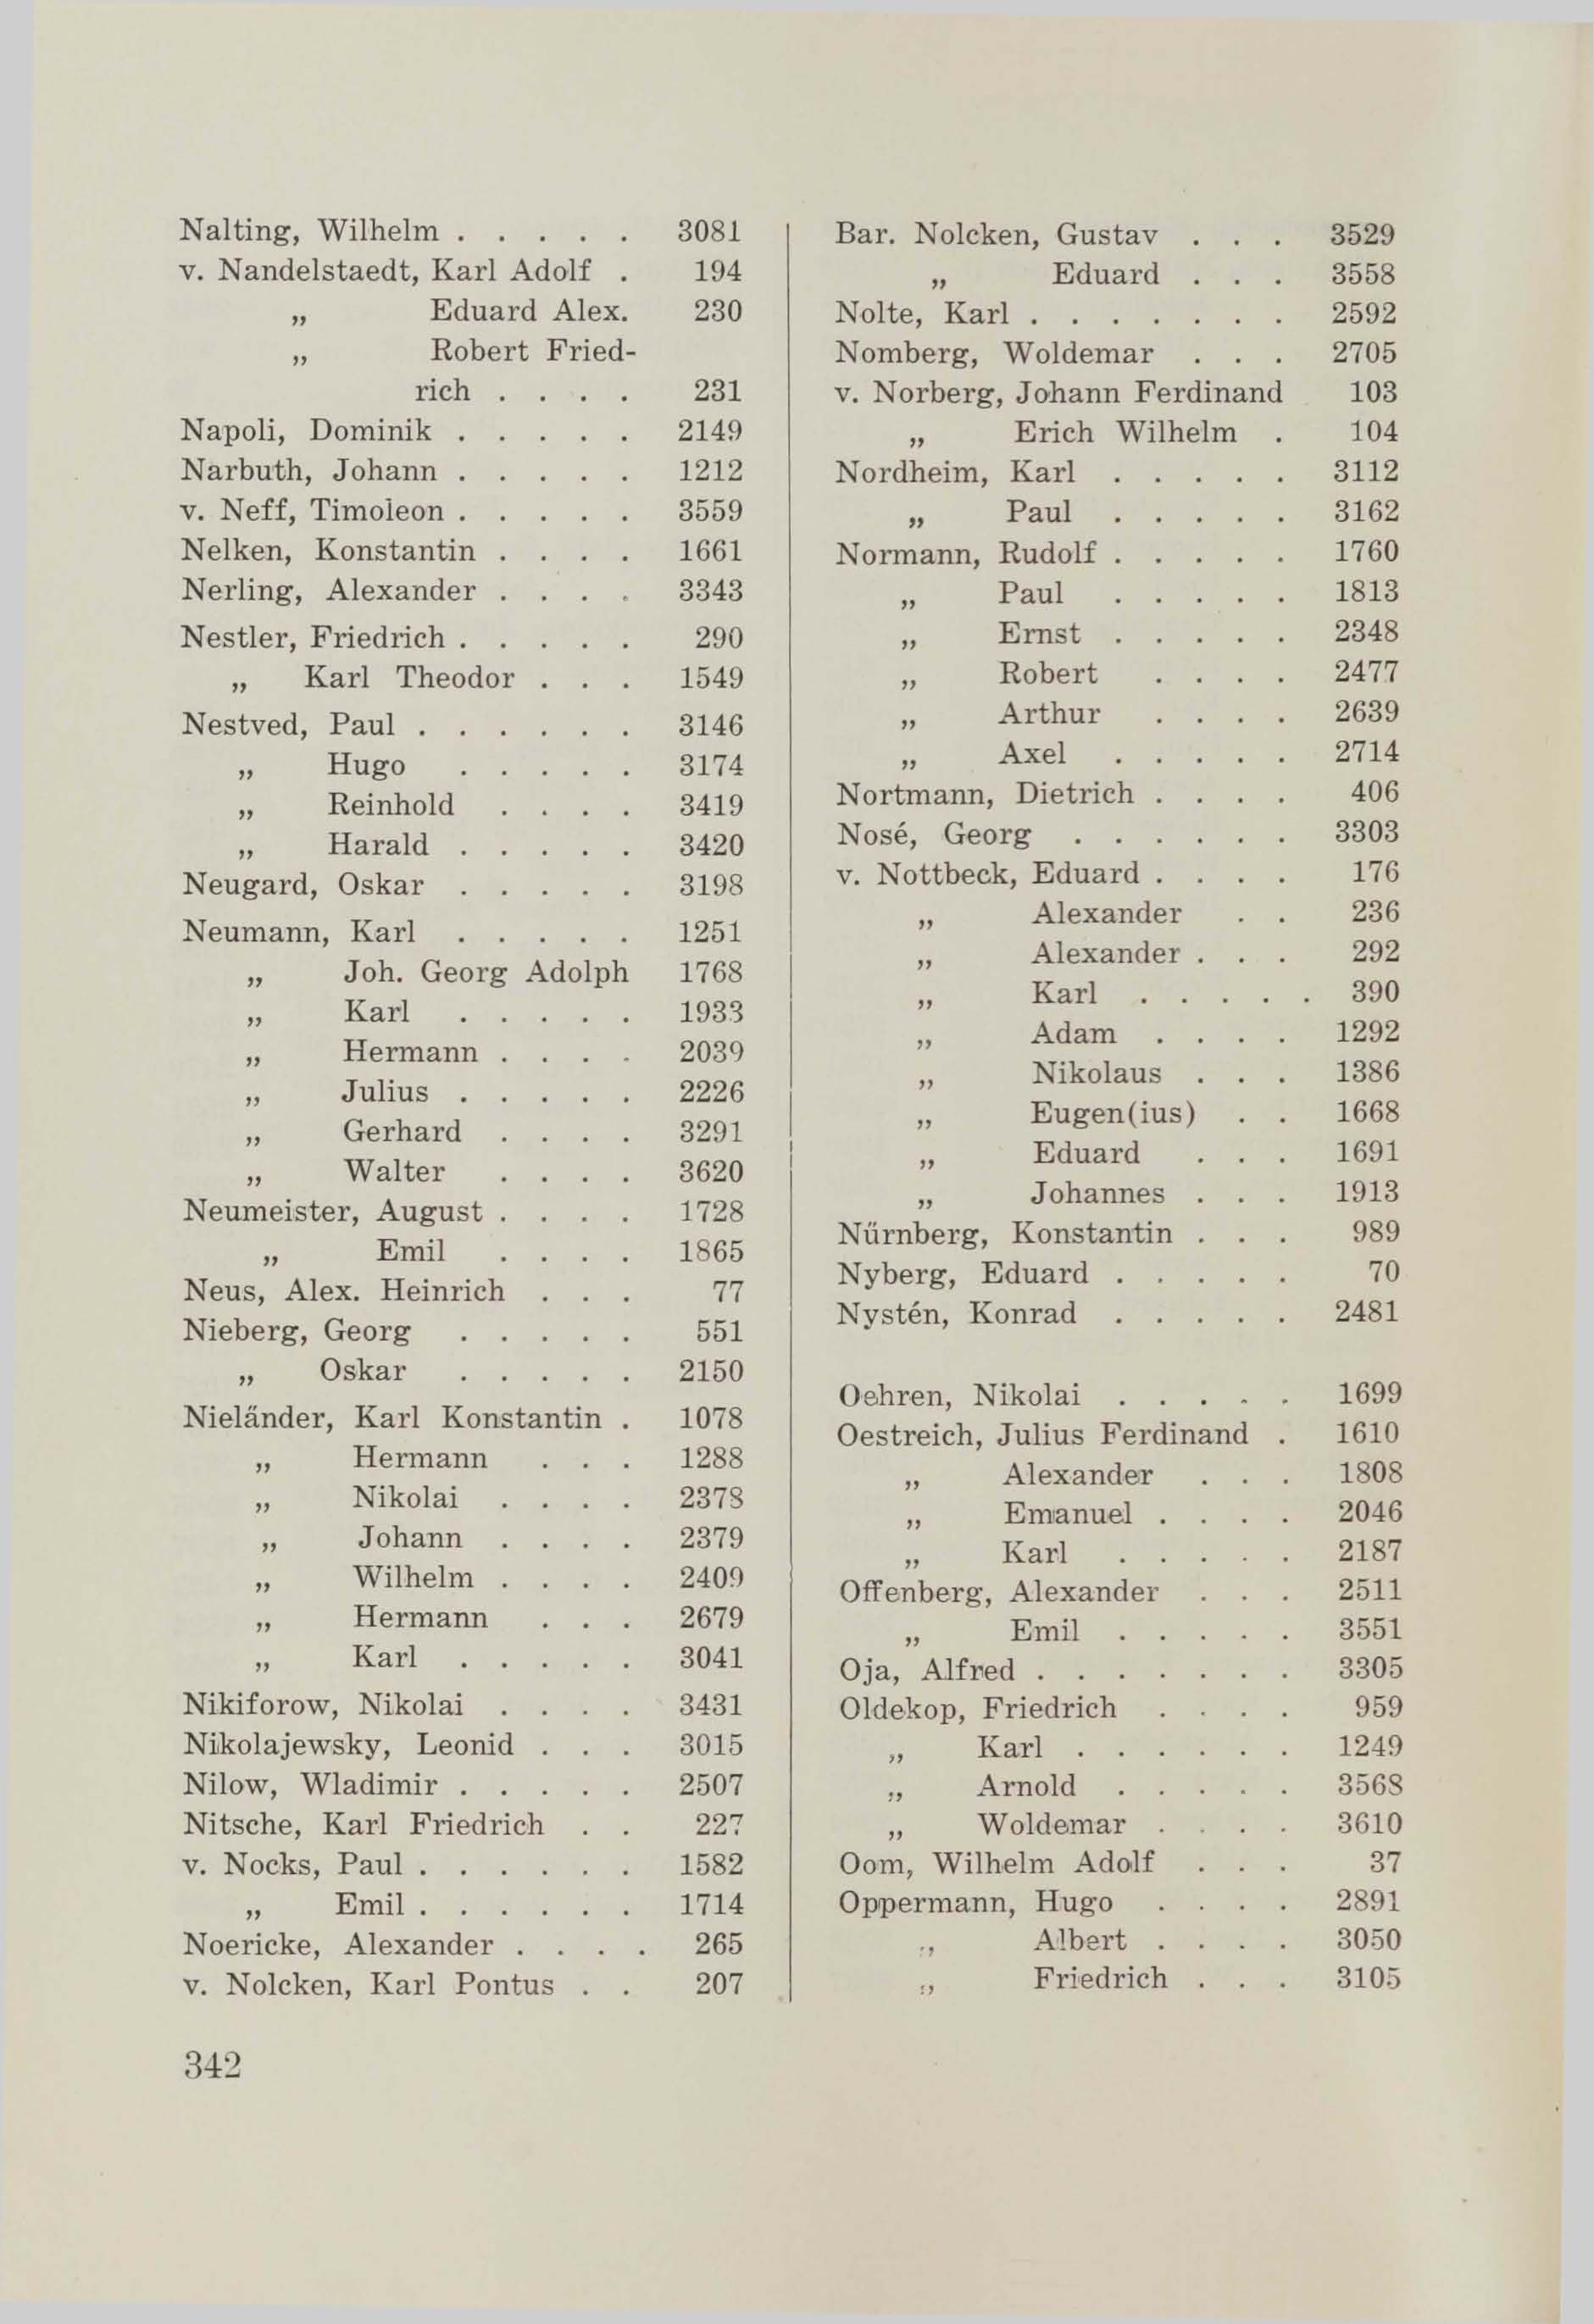 Schüler-Verzeichnis des Revalschen Gouvernements-Gymnasiums 1805–1890 (1931) | 352. (342) Main body of text